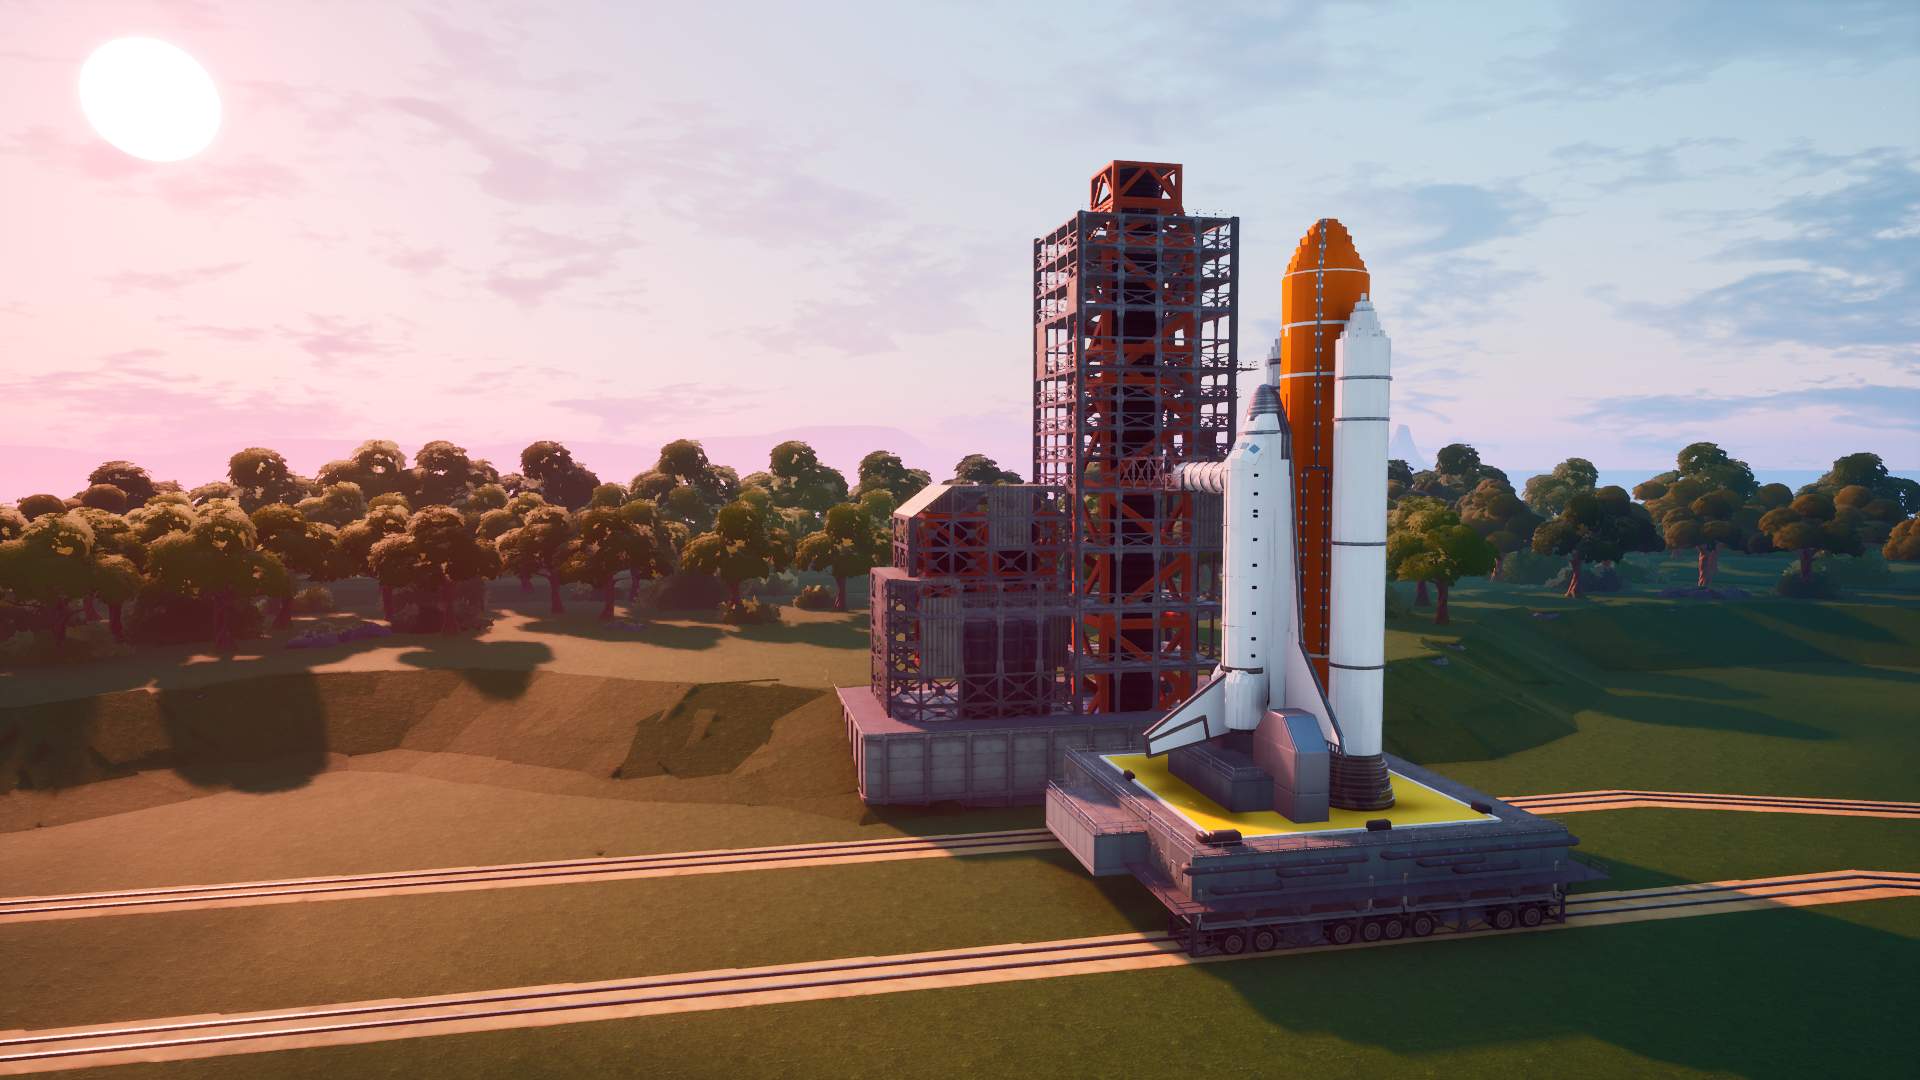 rocket launch base : Hide & seek